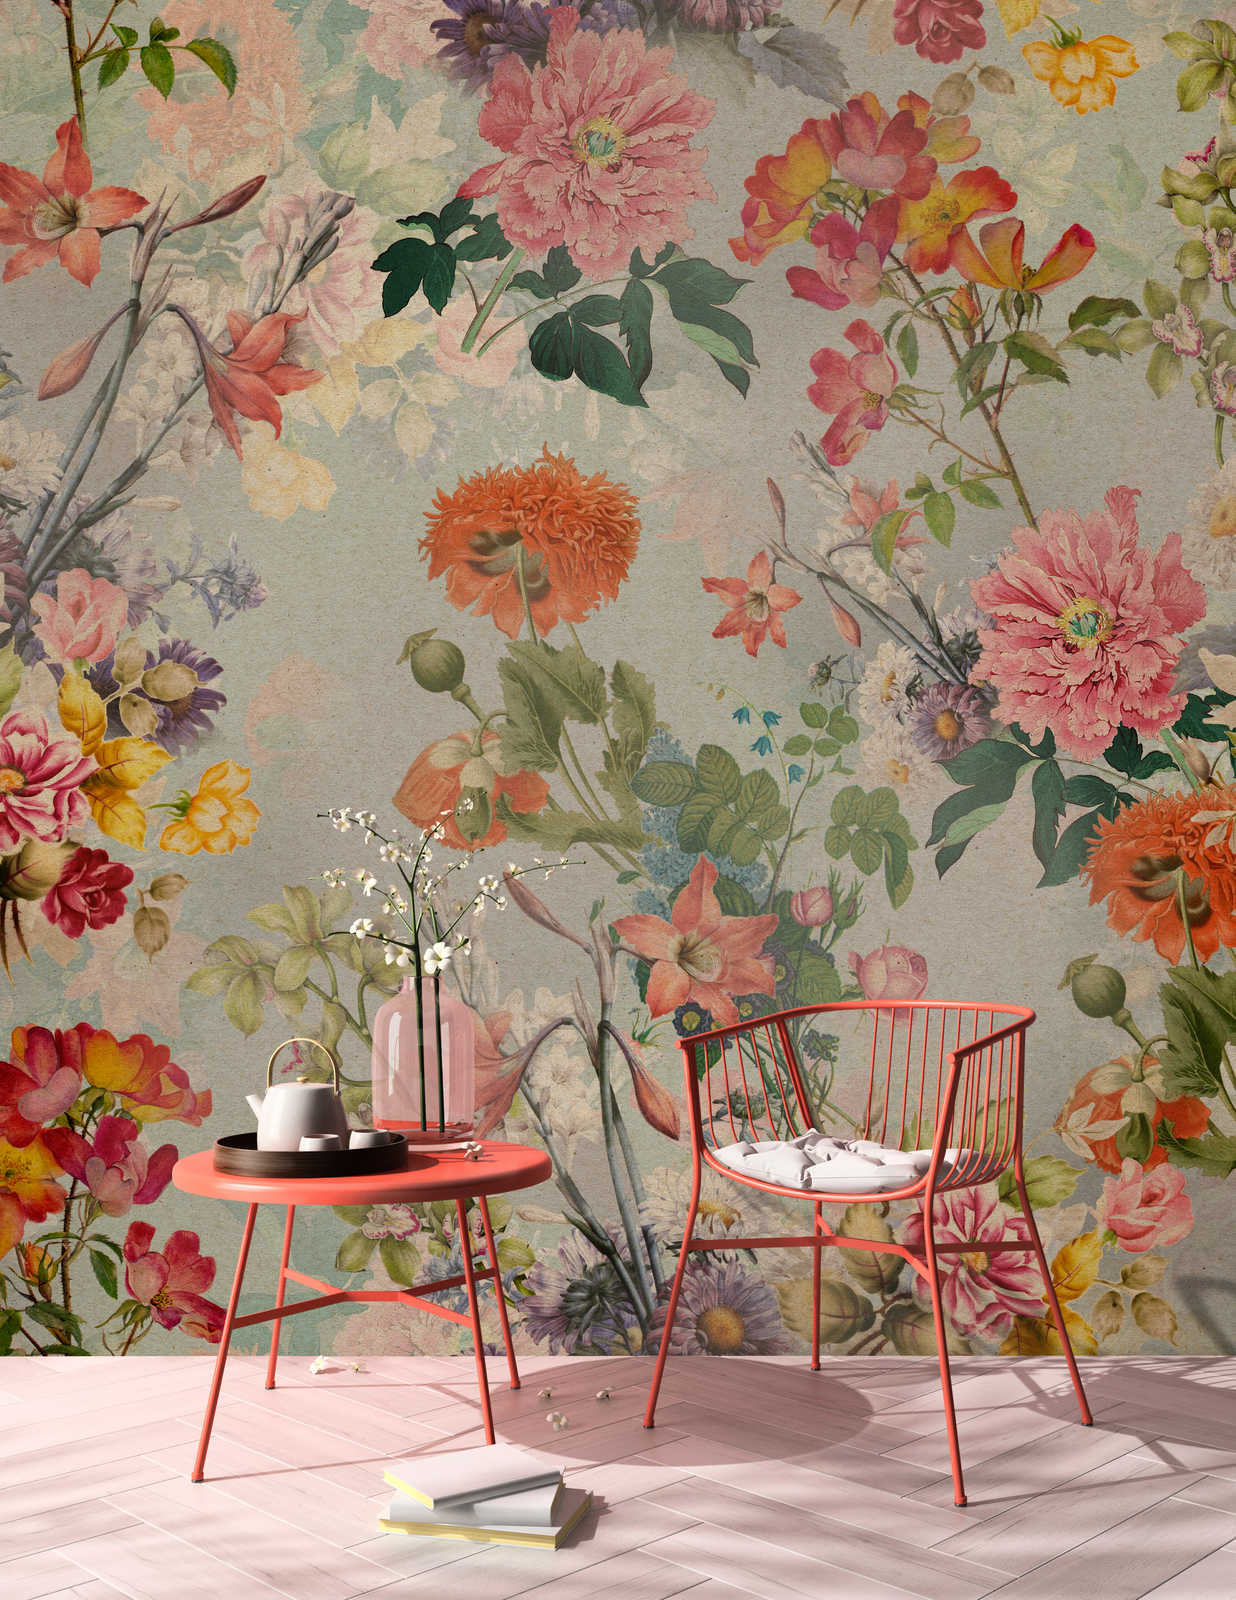             Amelies Home 1 - Papel pintado de flores vintage en estilo campestre romántico
        